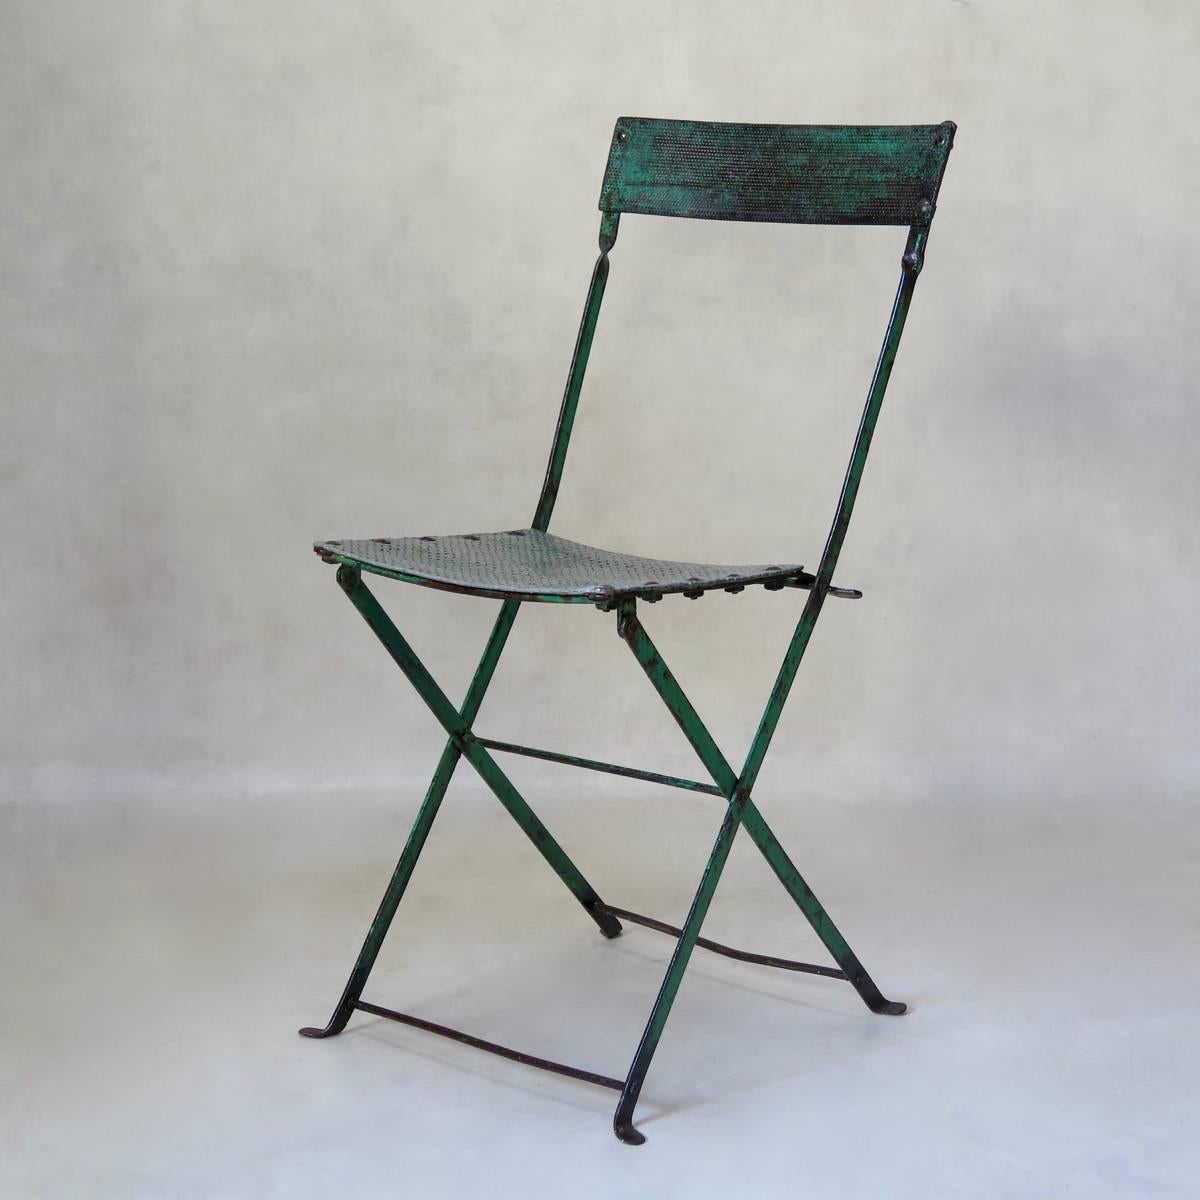 Sehr schöner klappbarer Eisenstuhl mit wunderschöner grüner Patina. Sitz und Rückenlehne sind aus gelochtem Aluminiumblech gefertigt.